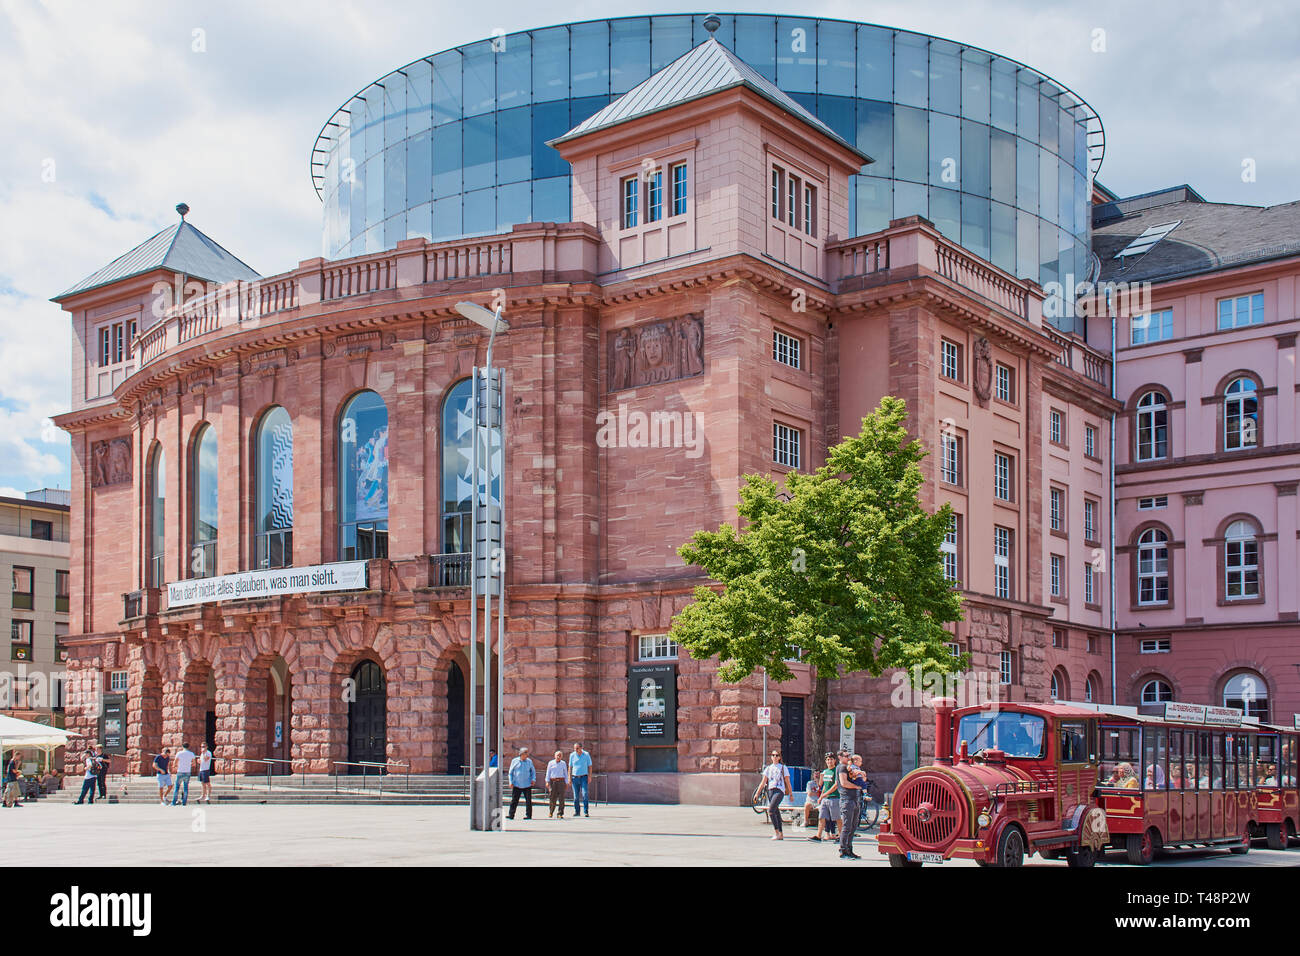 Mainz, Germania - 25 Maggio 2017: Teatro di Stato di Mainz in una giornata di sole con persone davanti e una escursione in treno accanto a. Foto Stock